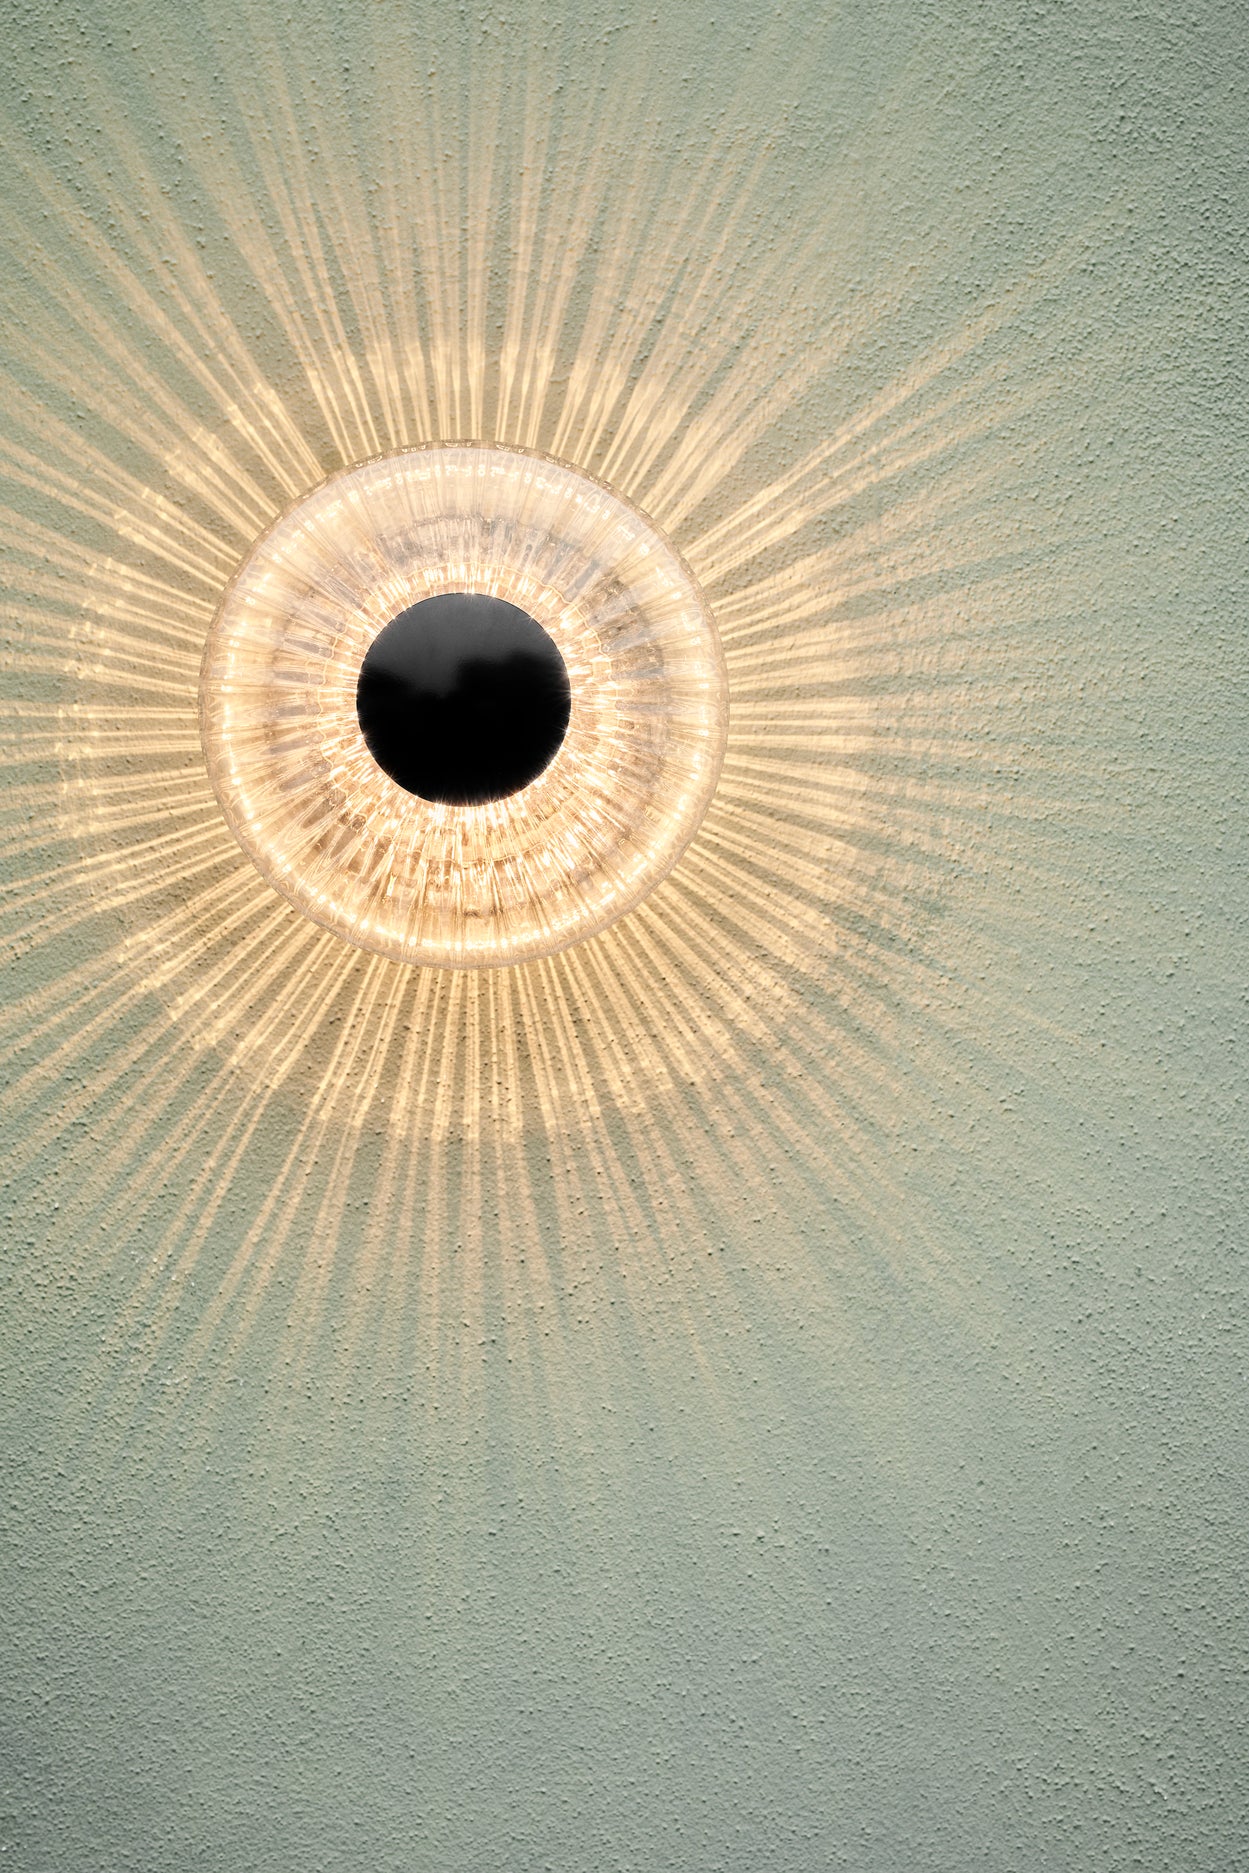 Rund udendørs væglampe af klart klart glas, på lys pudset mur